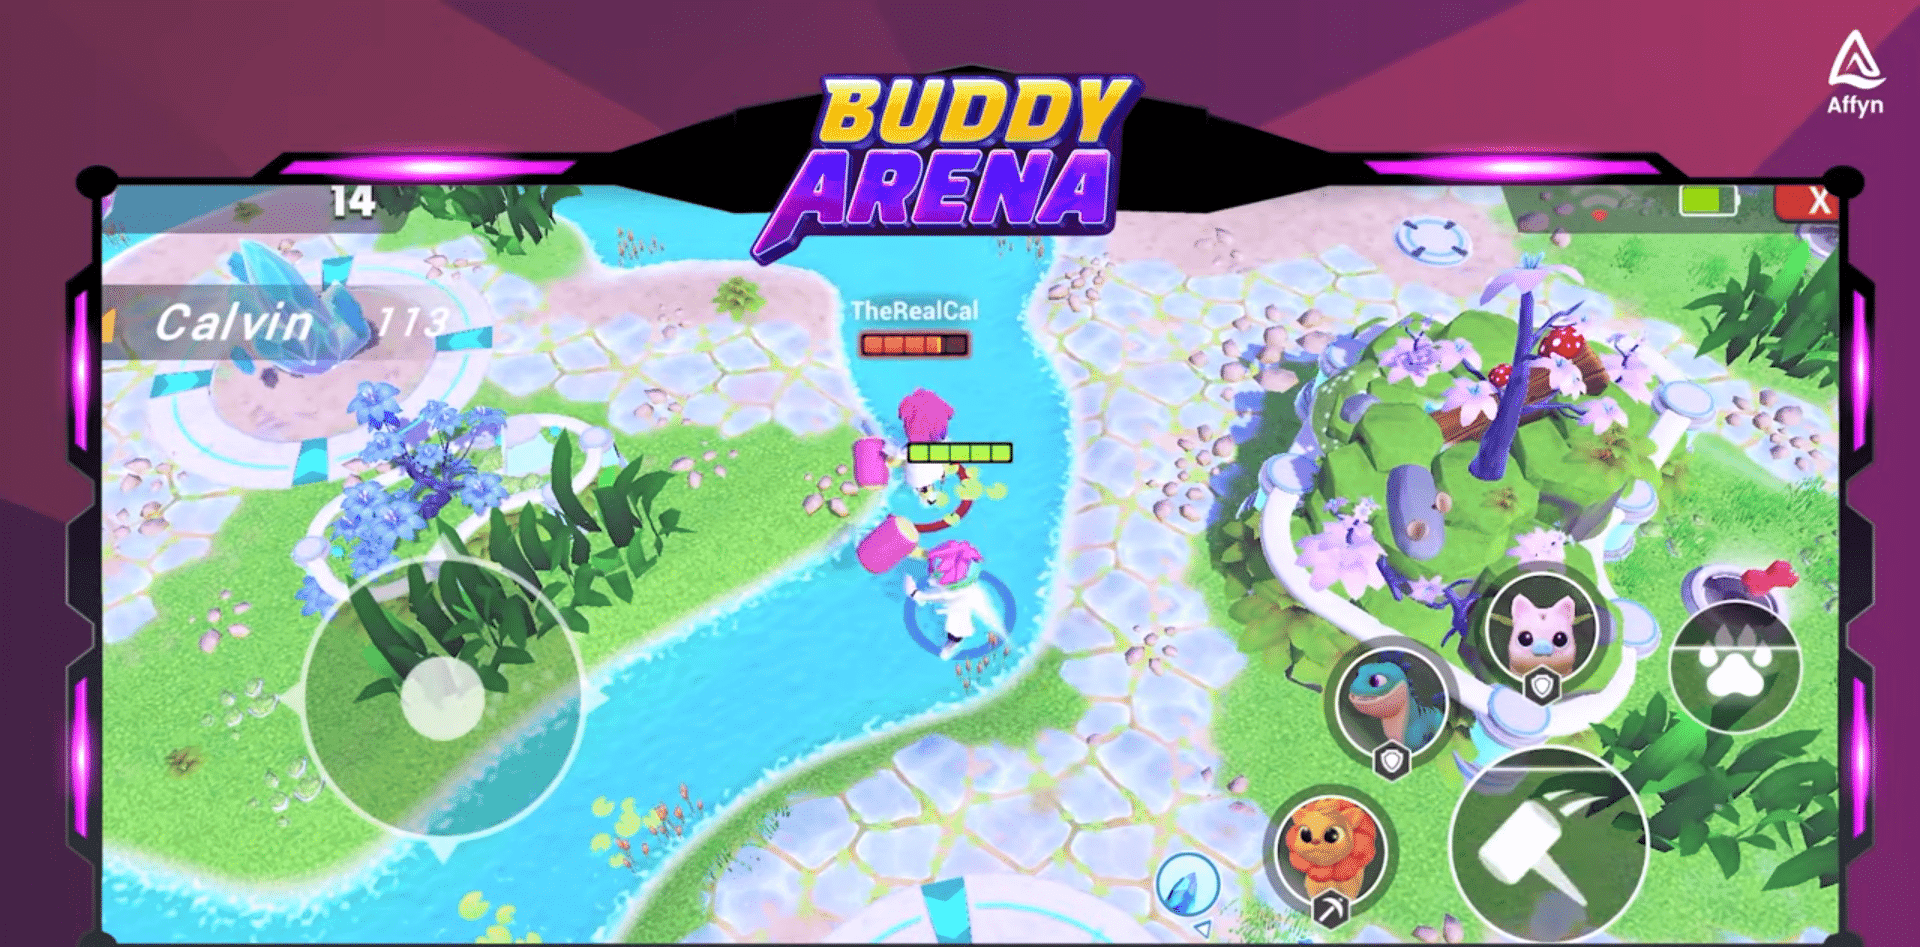 Affyn, creador de juegos web3 con sede en Singapur, presenta Buddy Arena, un juego móvil web3 que ofrece NFT de amigos de Nexus World, una experiencia de batalla en línea.